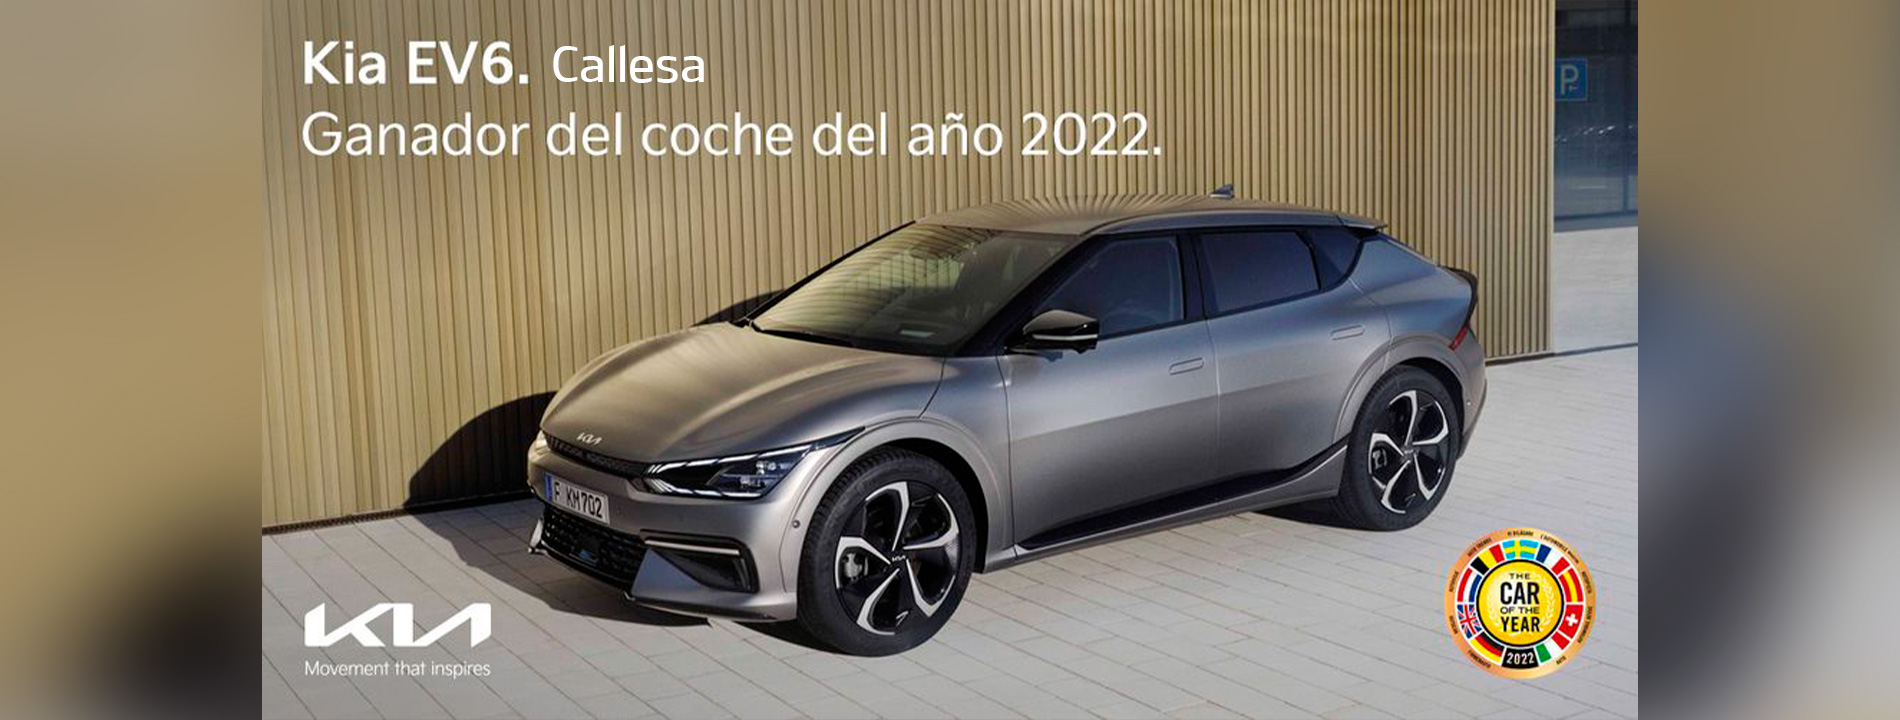 ev6-coche-del-año-2022